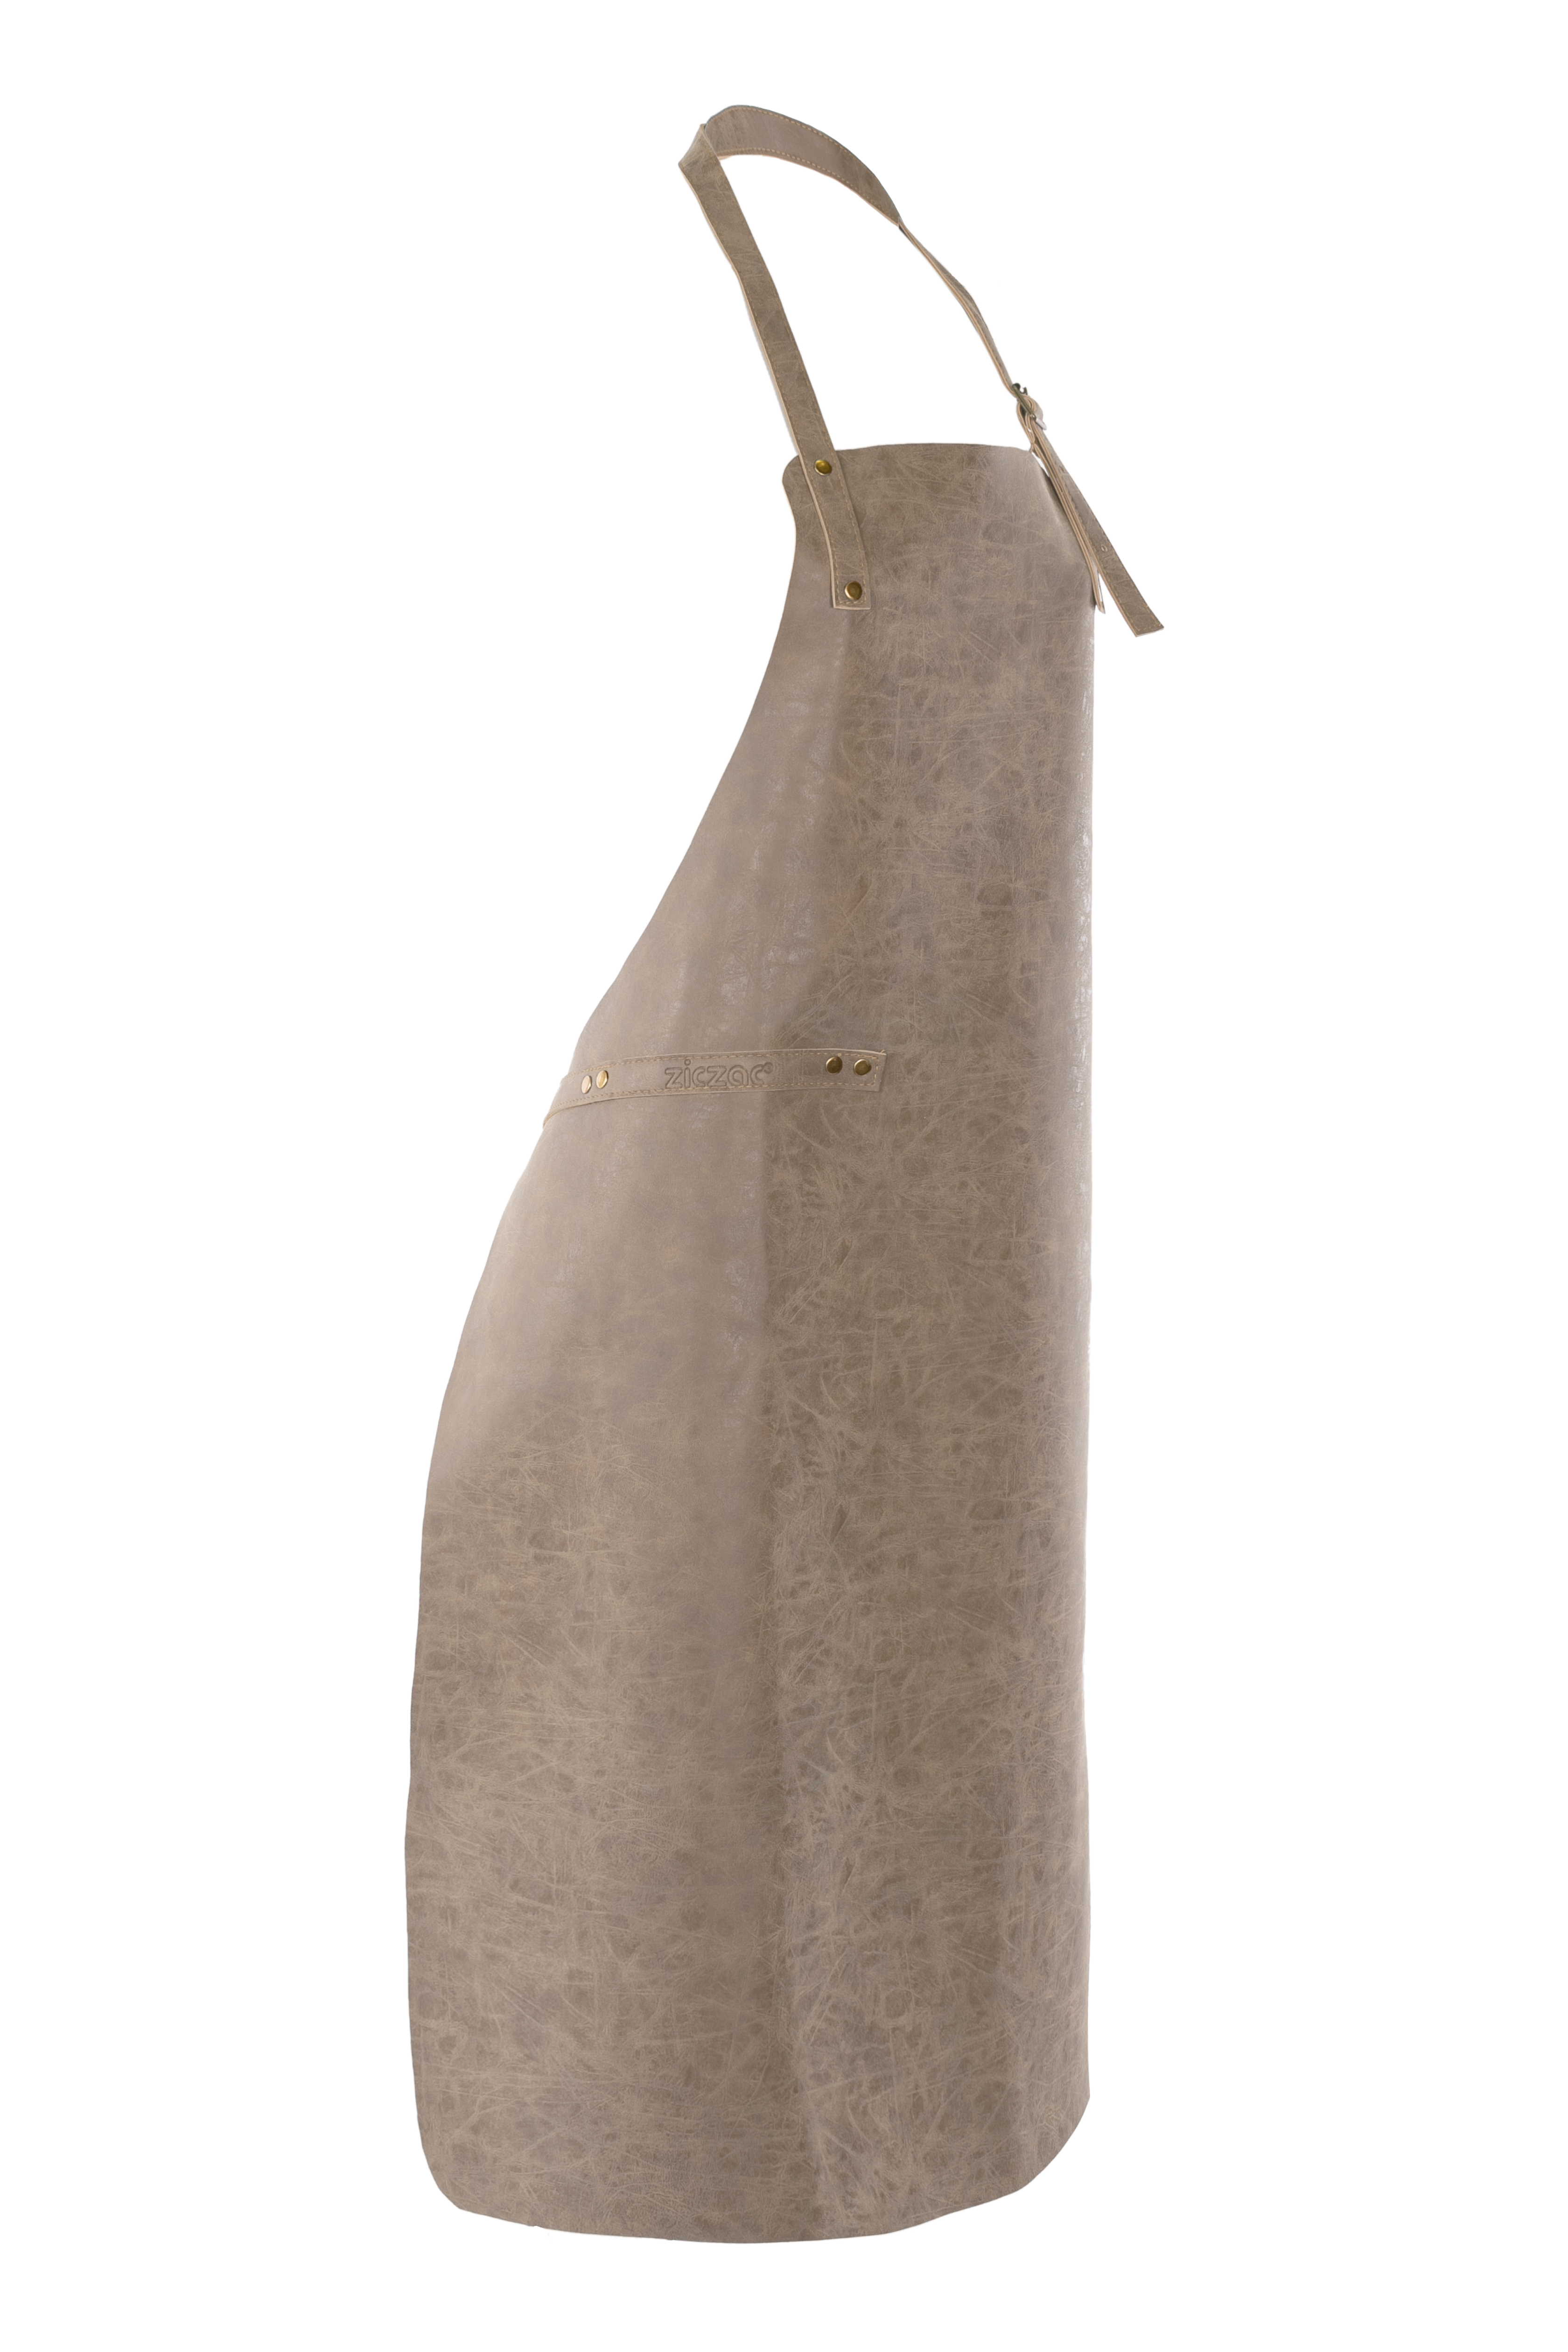 Schort TRUMAN (Towel loop - no pocket - opt. Accessory bag), 70x90 cm, taupe